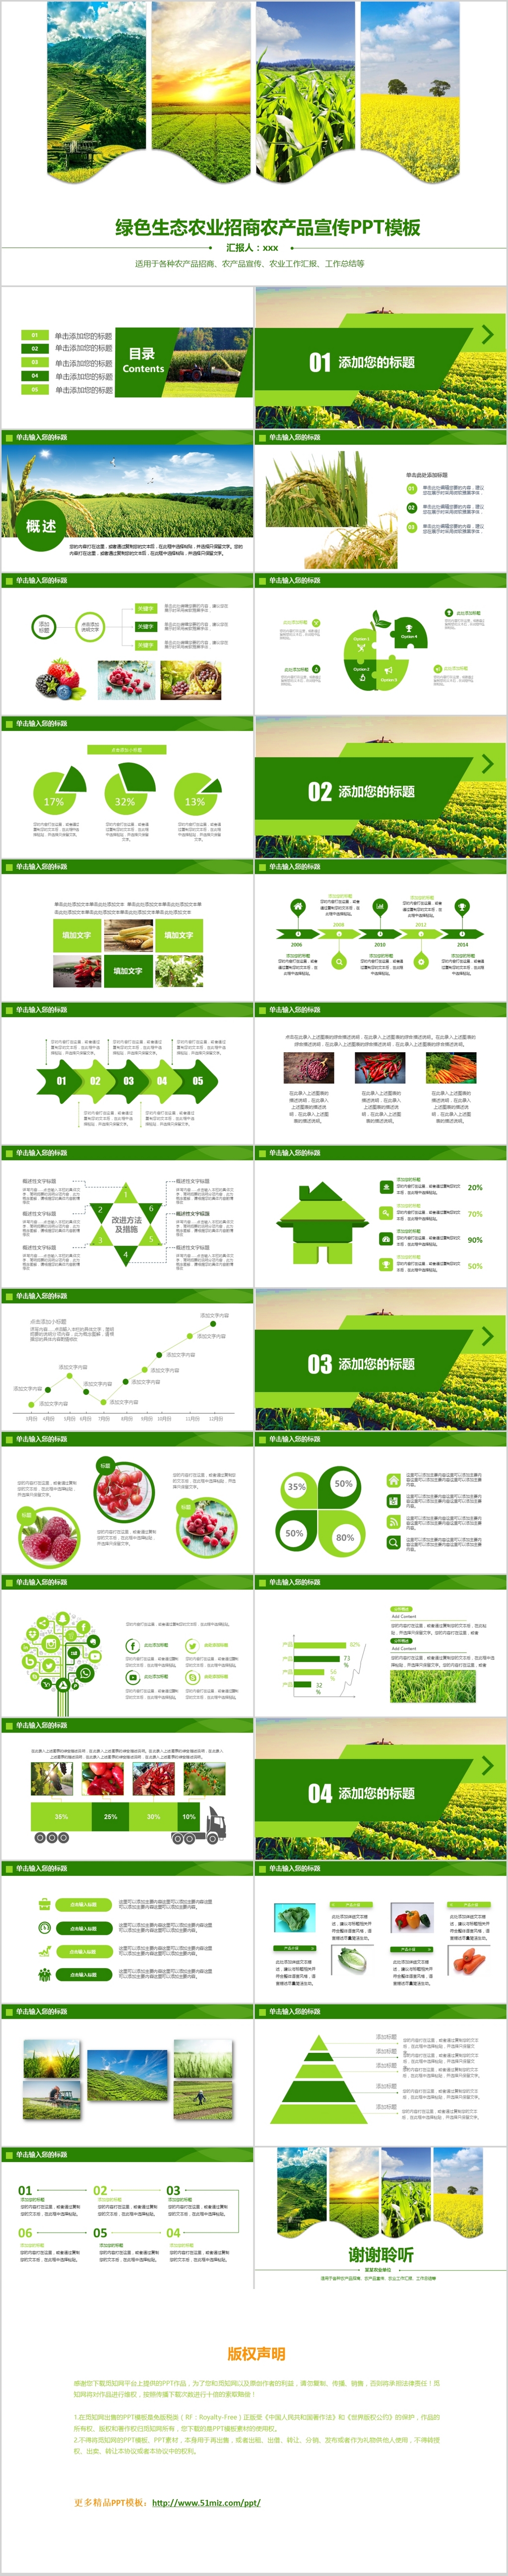 绿色生态农业招商农产品宣传PPT模板